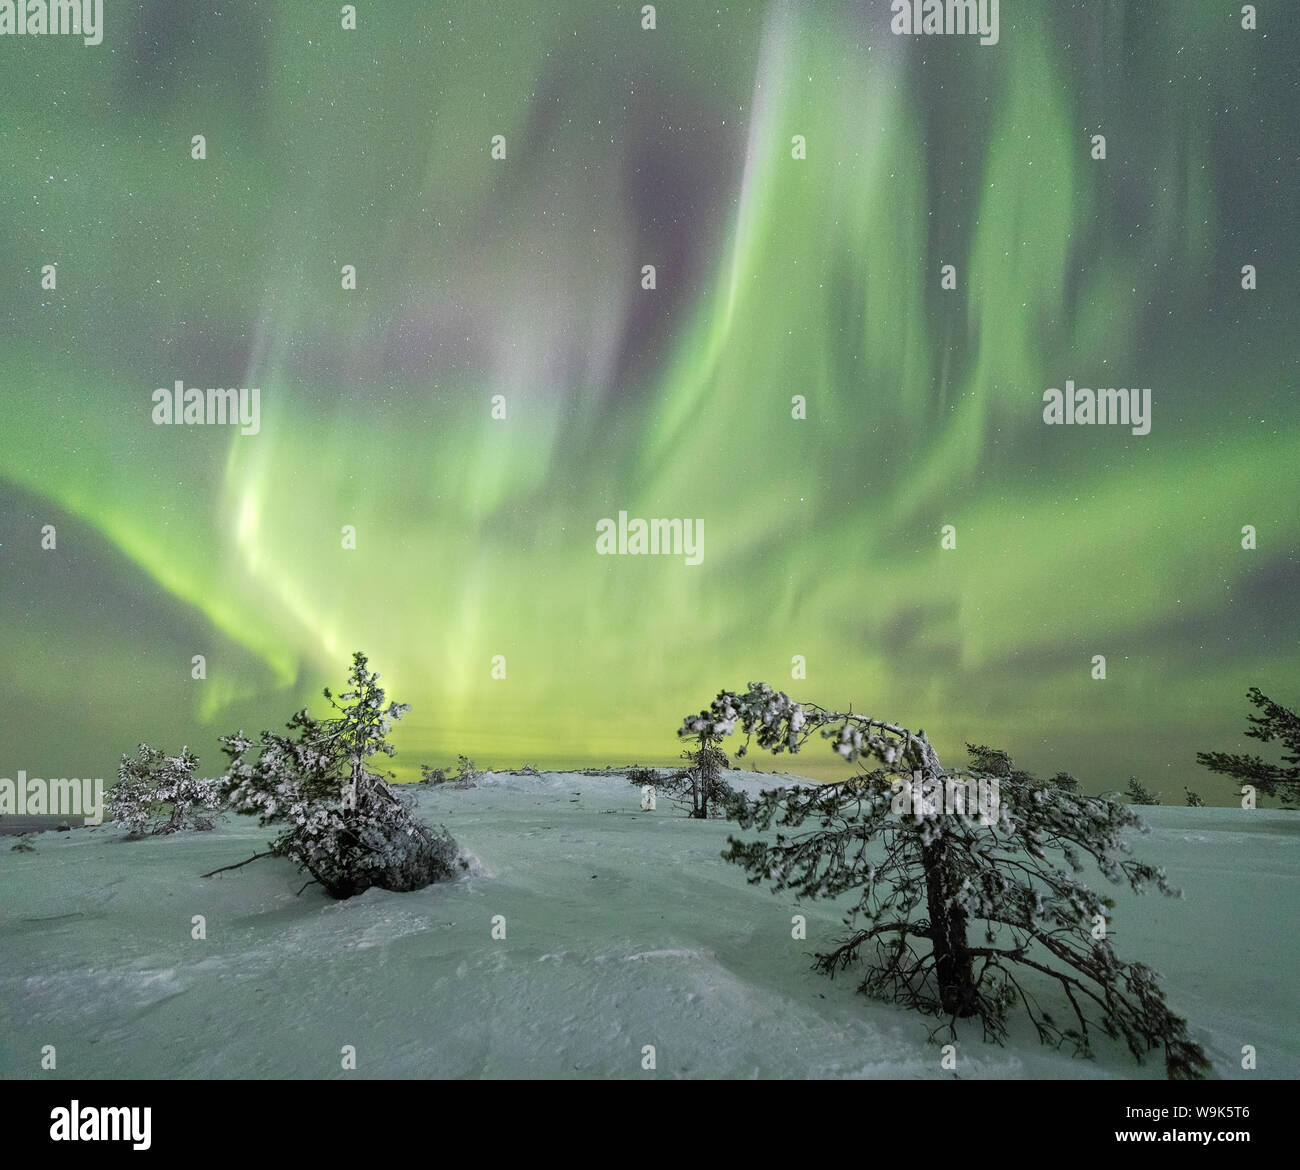 Panorama de nevados bosques y árboles congelados enmarcada por las luces del Norte (Aurora Borealis) y estrellas, Levi, Sirkka, Kittilä, región de Laponia, Finlandia, Europa Foto de stock